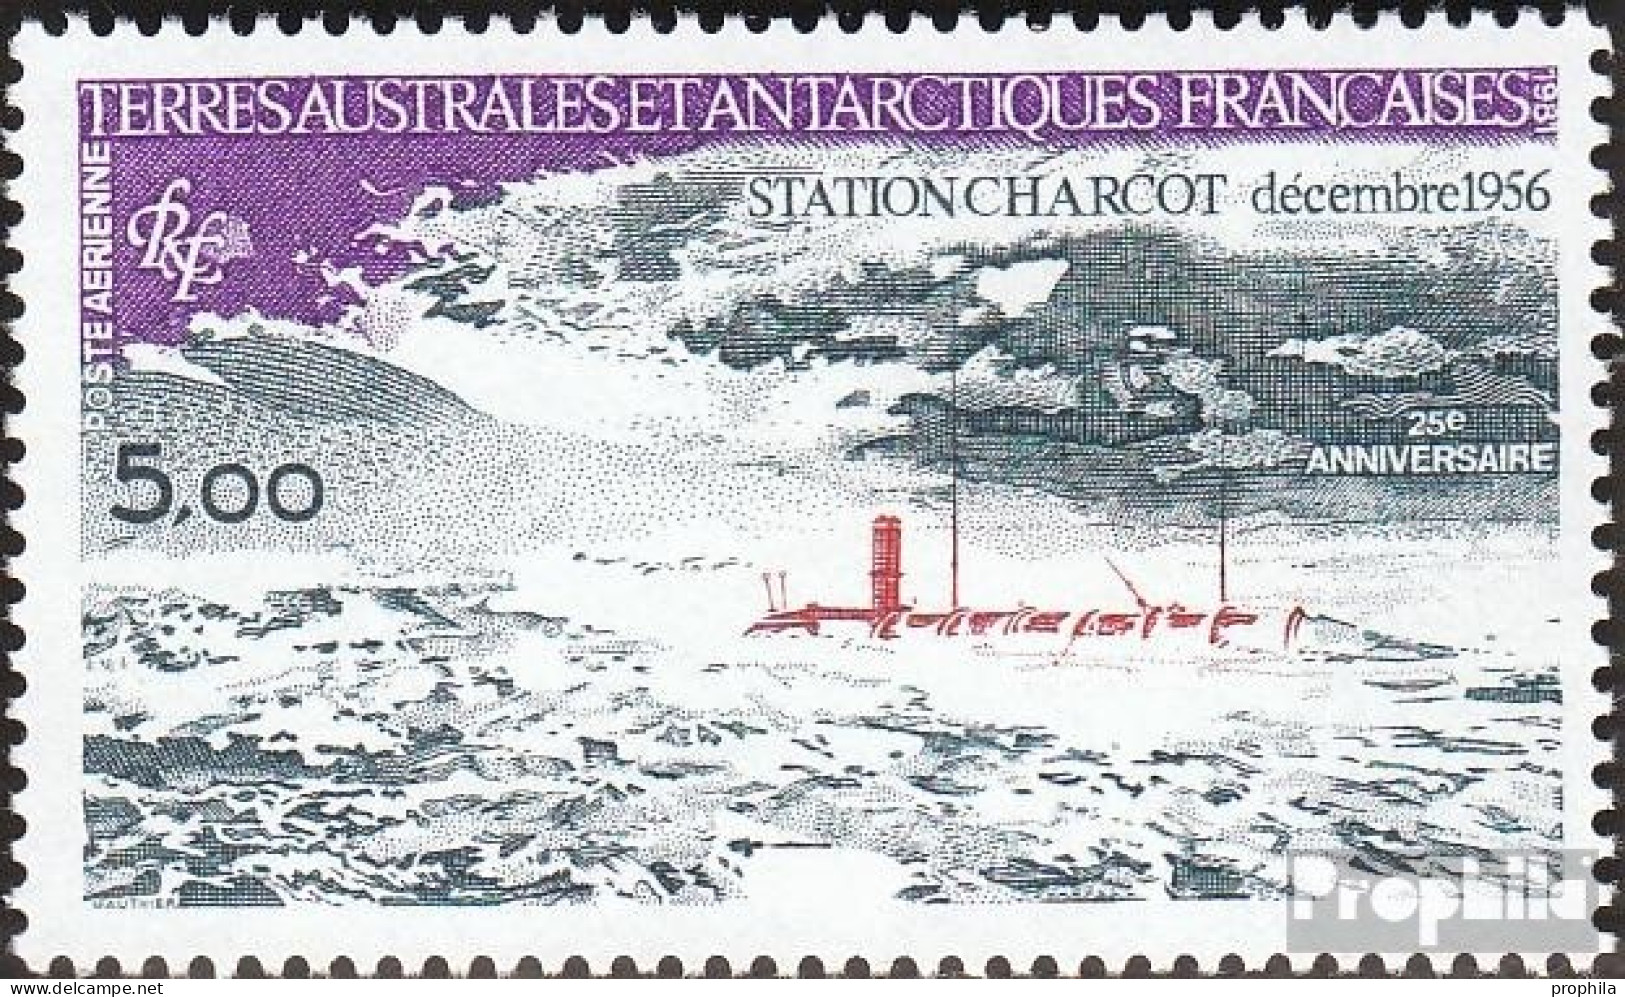 Französ. Gebiete Antarktis 165 (kompl.Ausg.) Postfrisch 1981 25 Jahre Station Charcot - Neufs